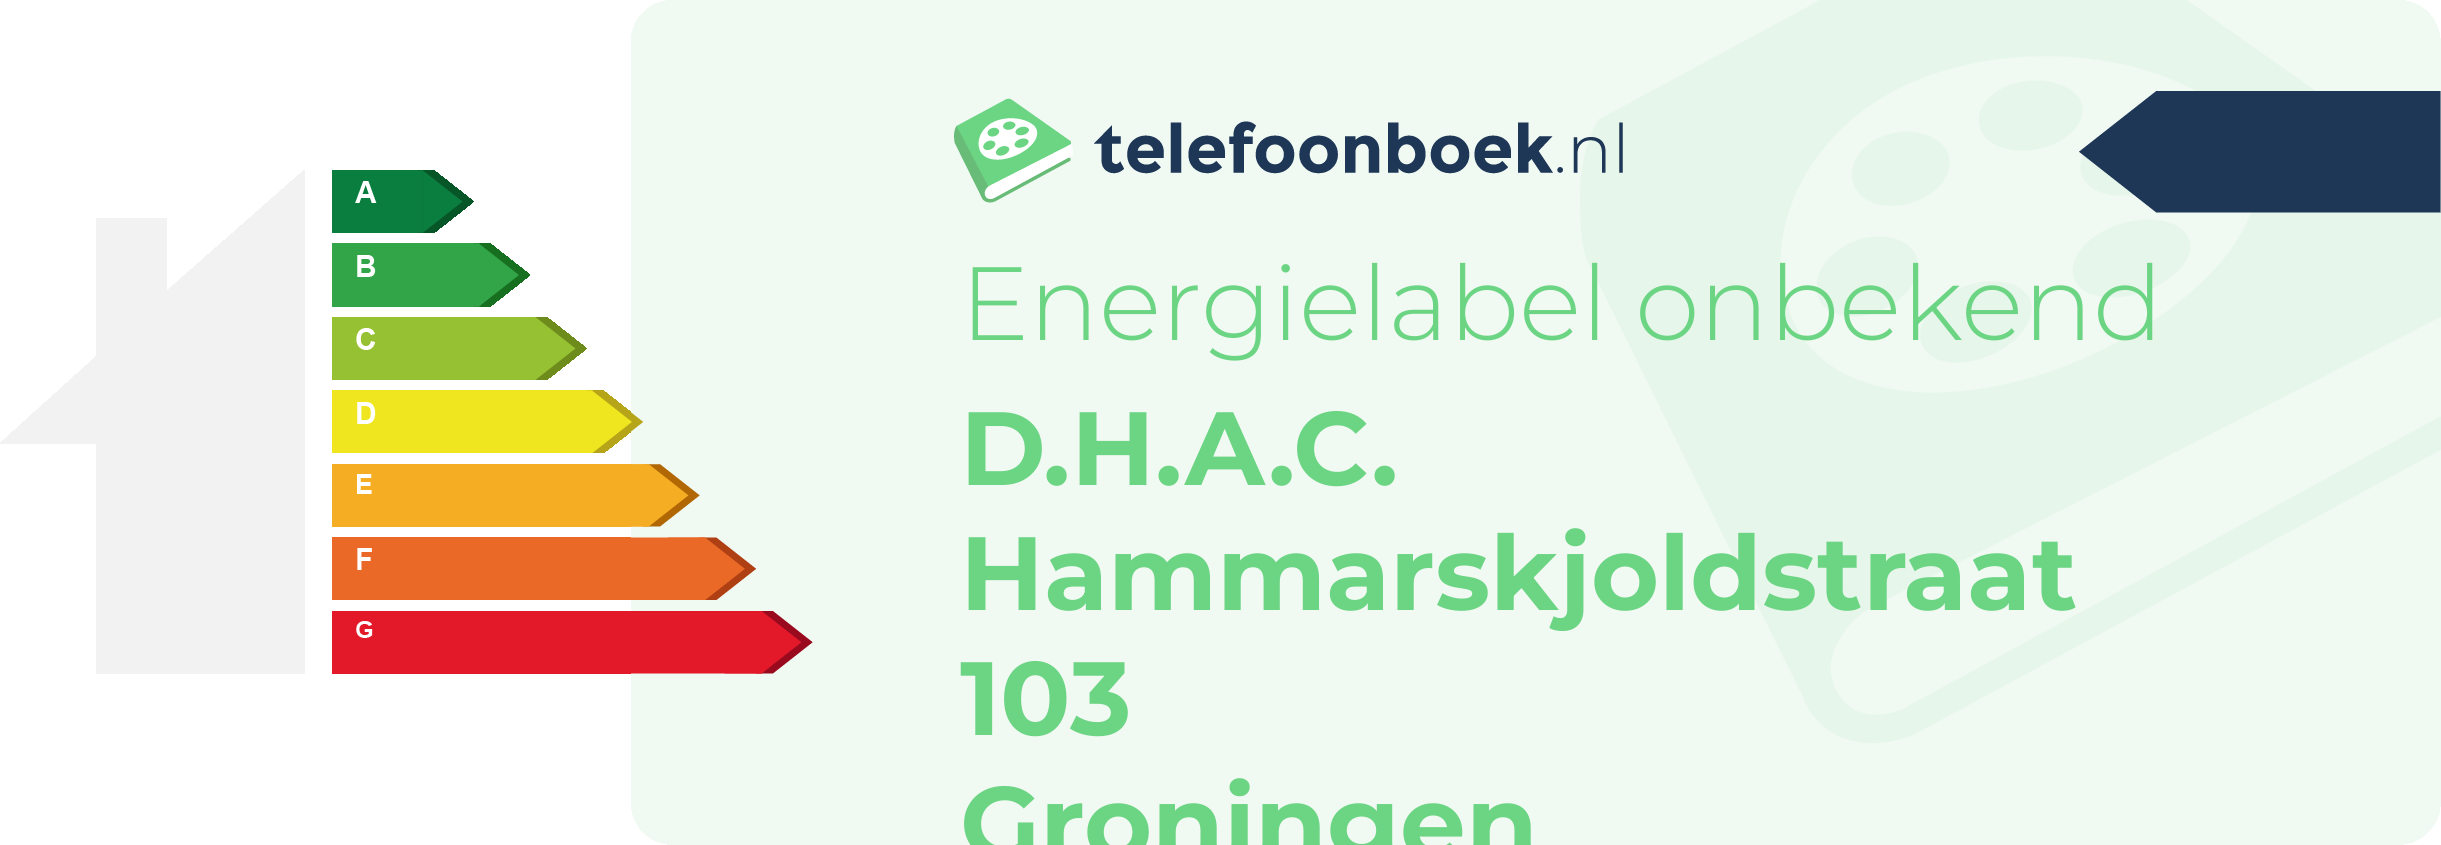 Energielabel D.H.A.C. Hammarskjoldstraat 103 Groningen